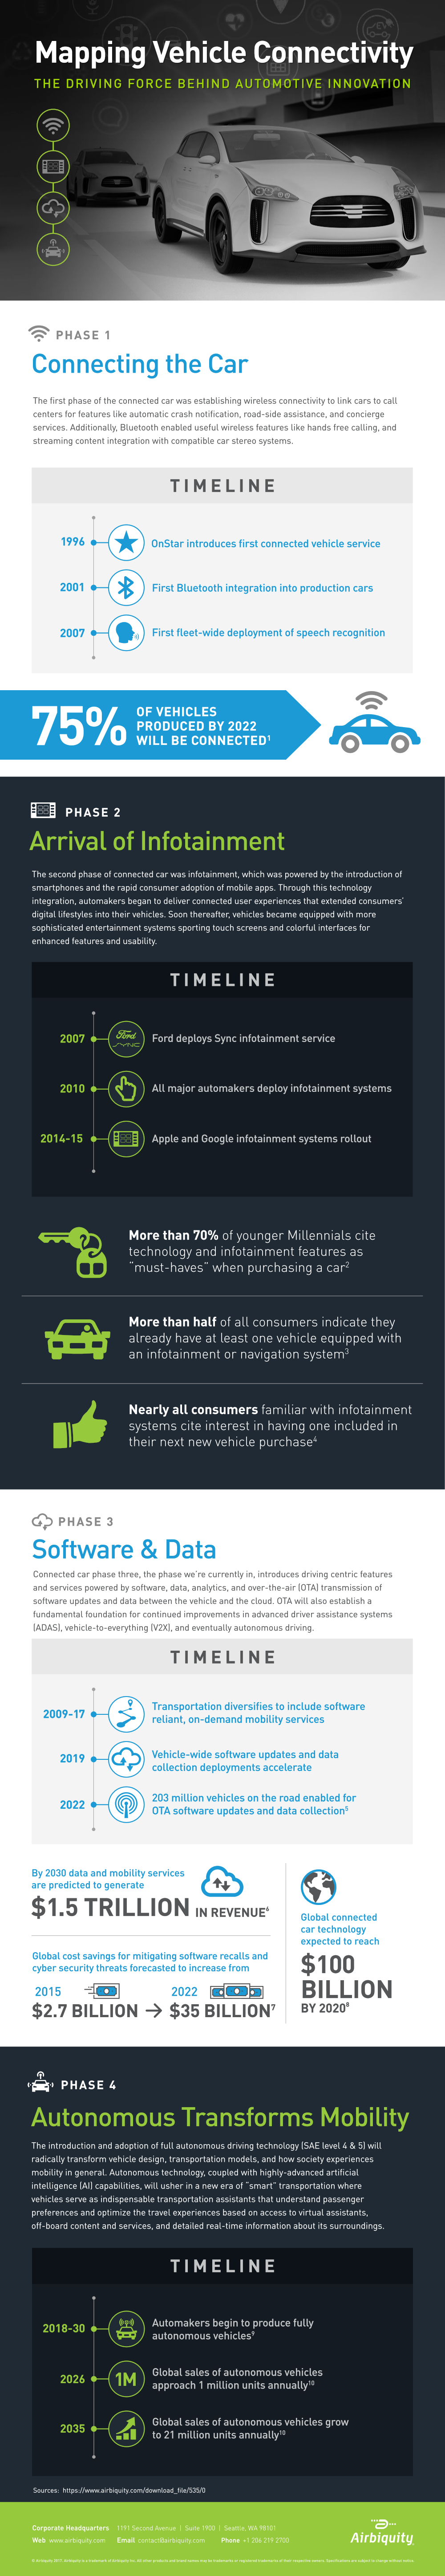 auto infographic